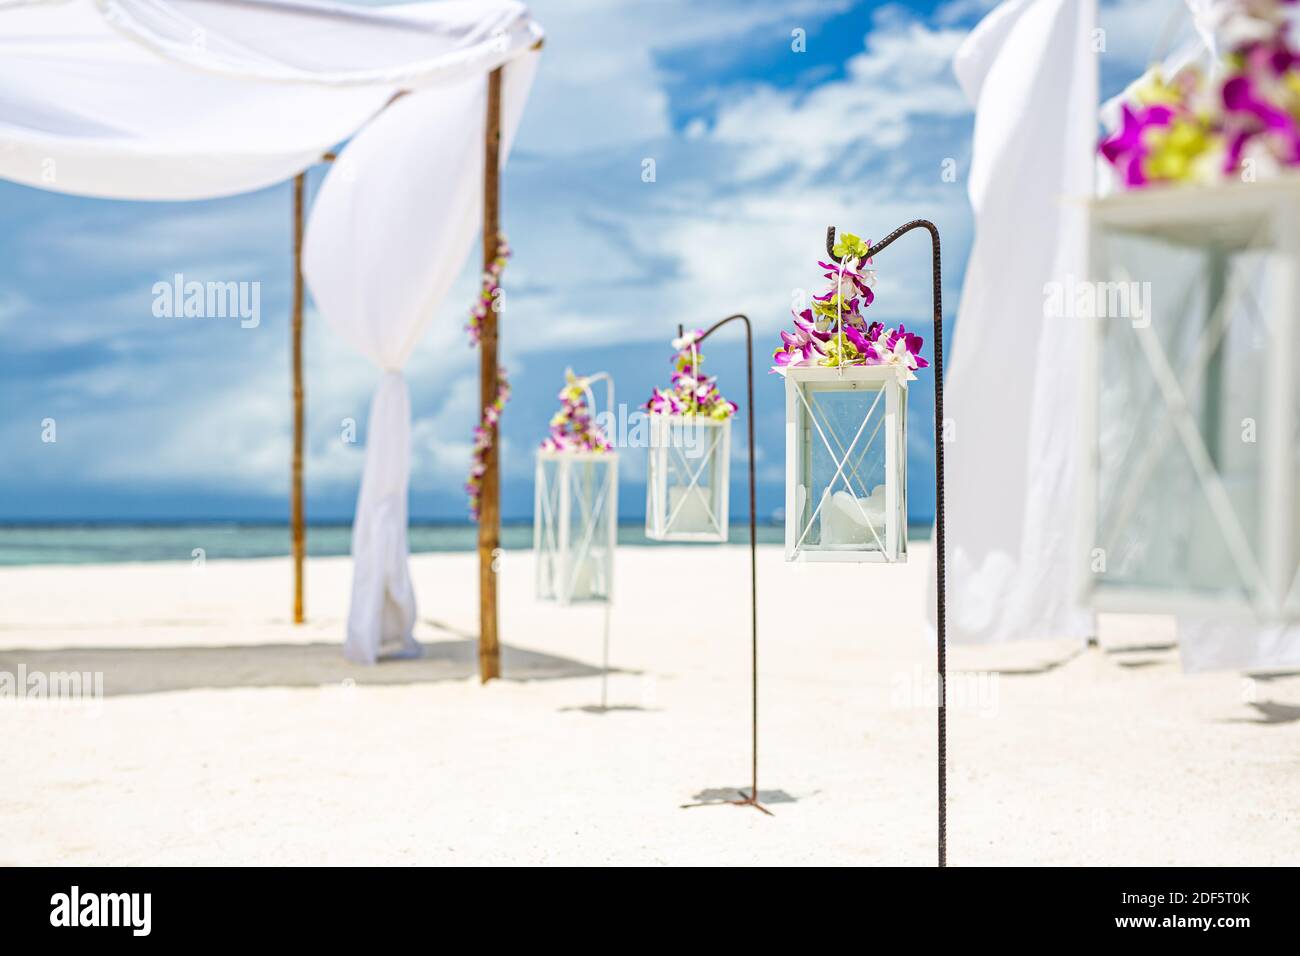 Romantische Hochzeitszeremonie am Strand, florale und weiße romantische Dekoration. Destination Hochzeit, Flitterwochen oder Jubiläum Feier, Strand Dekor Stockfoto